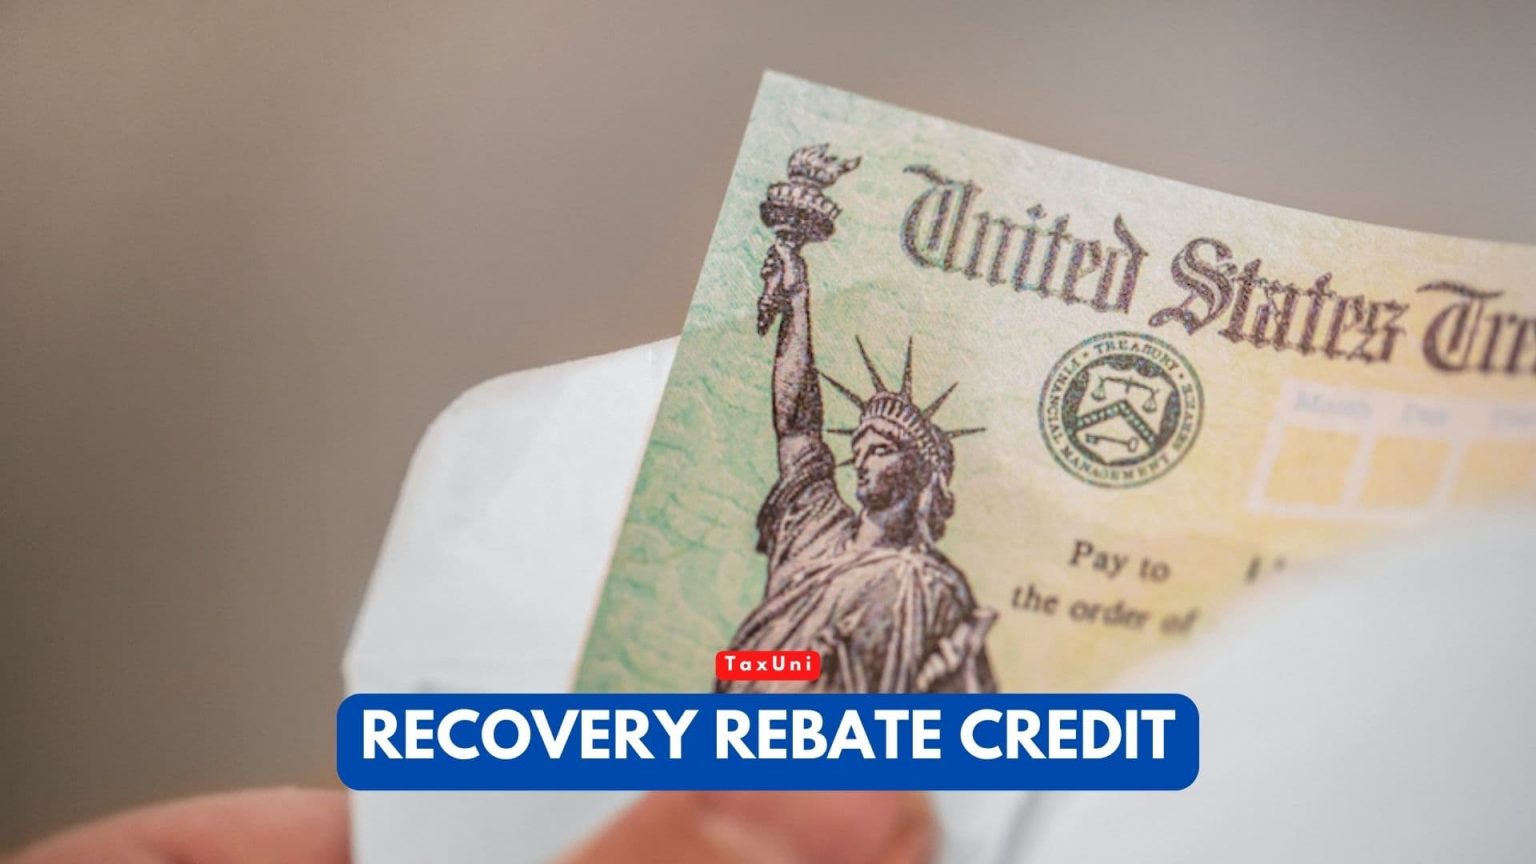 1040-recovery-rebate-credit-drake20